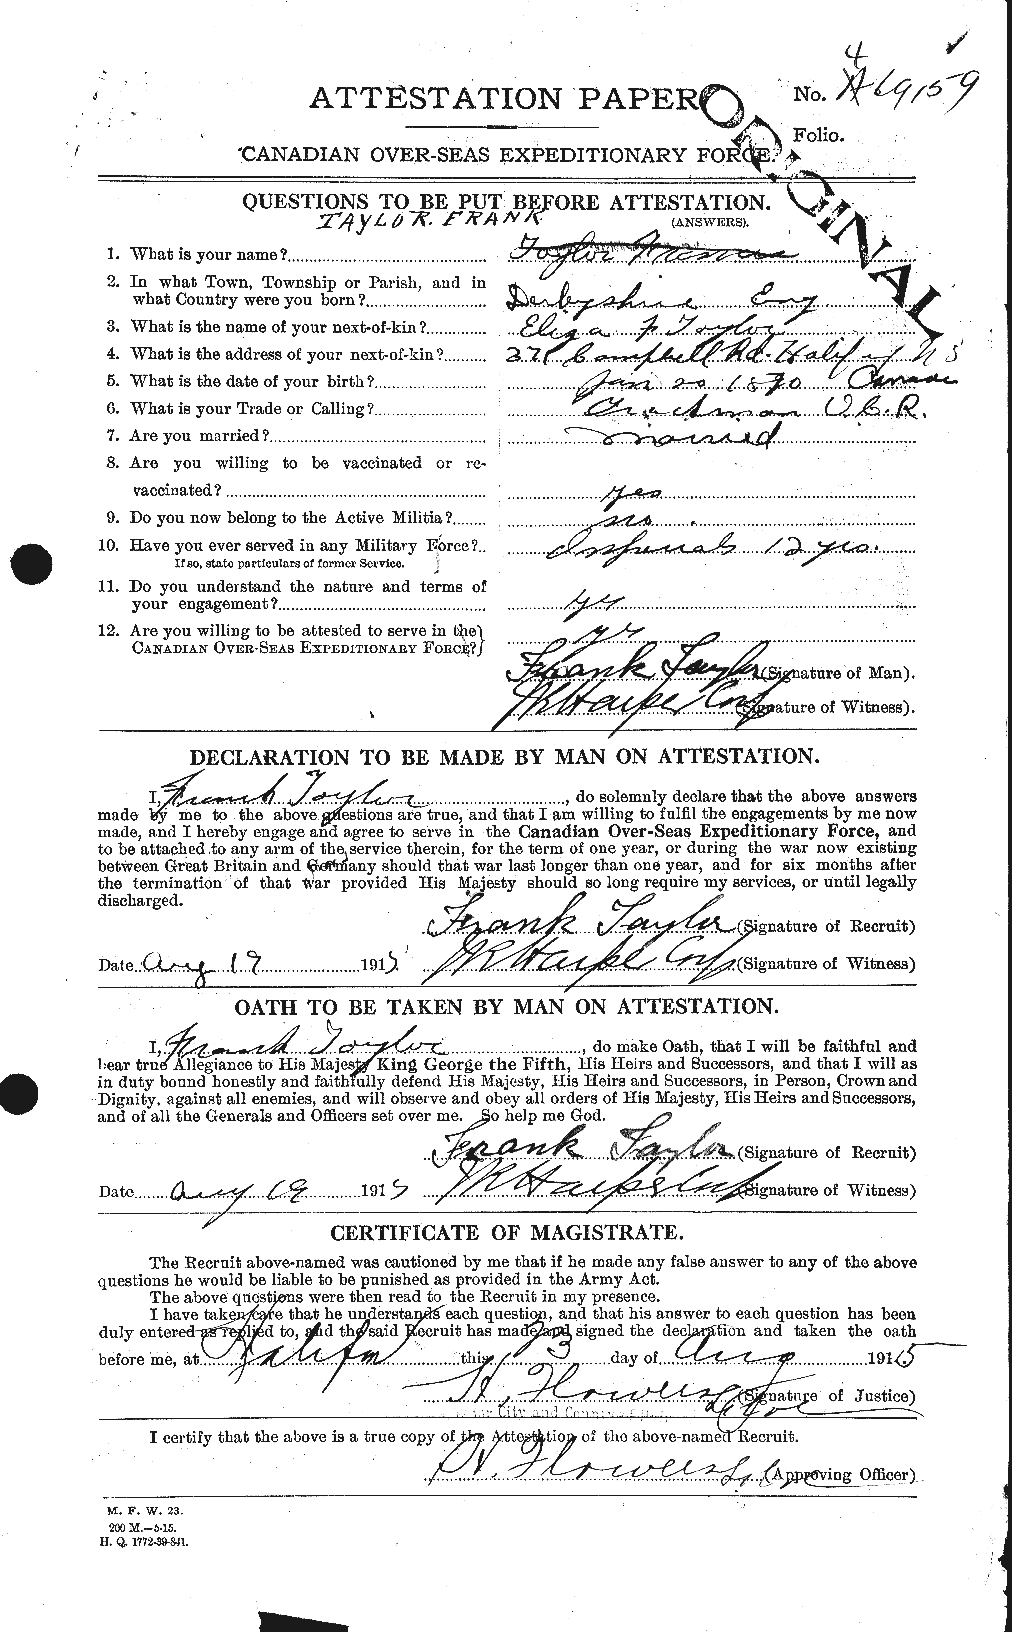 Dossiers du Personnel de la Première Guerre mondiale - CEC 625714a